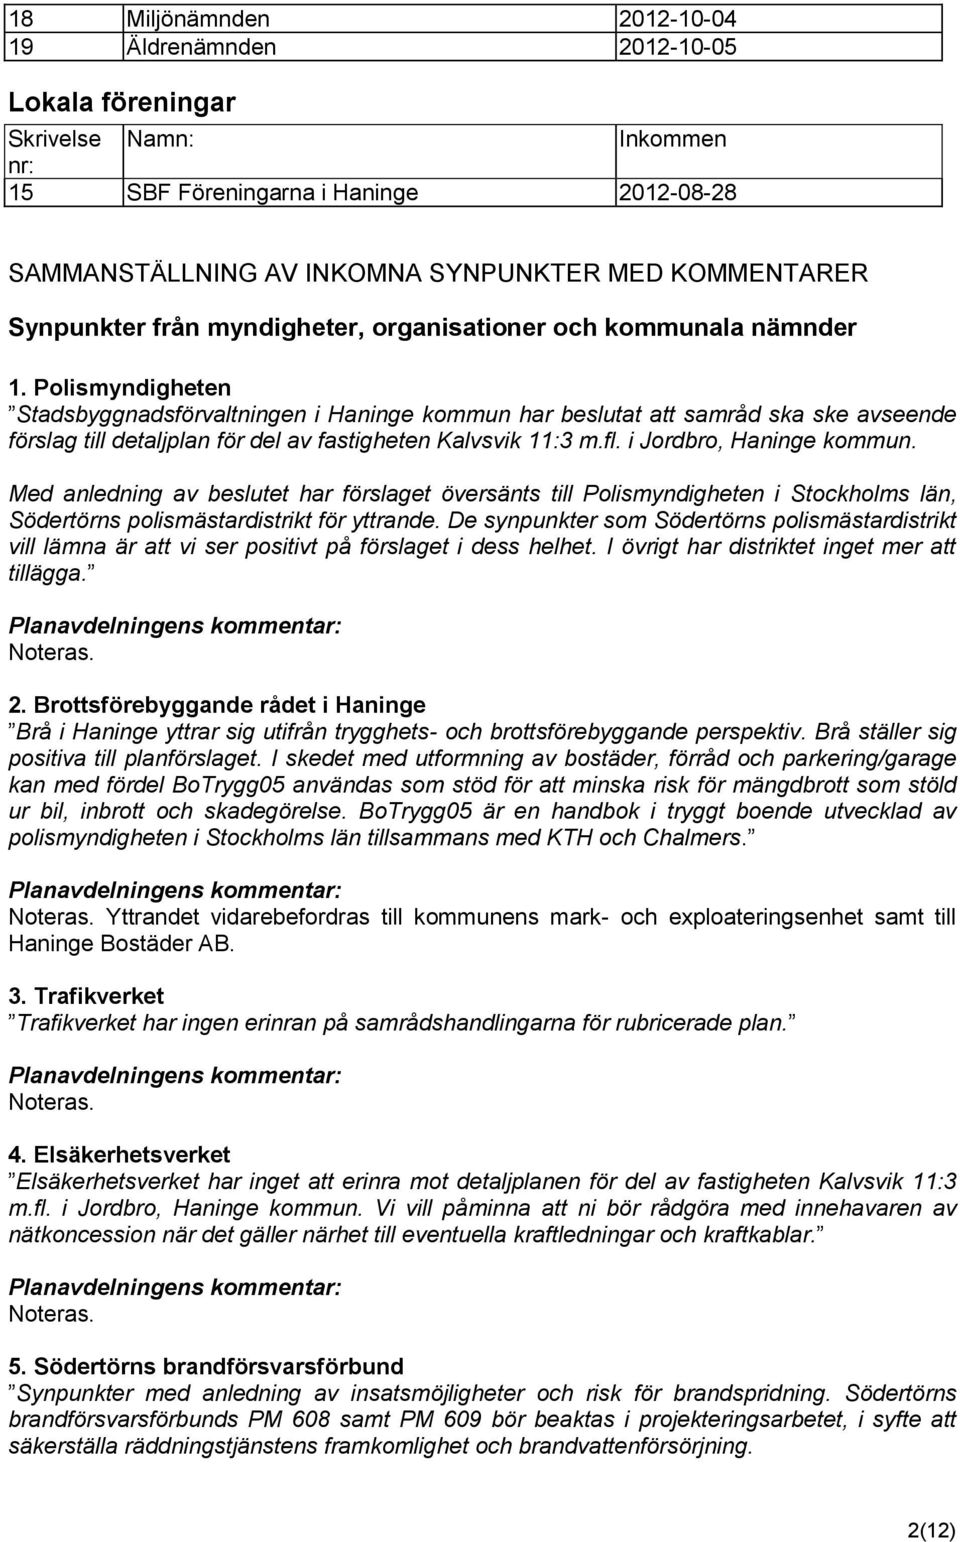 Polismyndigheten Stadsbyggnadsförvaltningen i Haninge kommun har beslutat att samråd ska ske avseende förslag till detaljplan för del av fastigheten Kalvsvik 11:3 m.fl. i Jordbro, Haninge kommun.